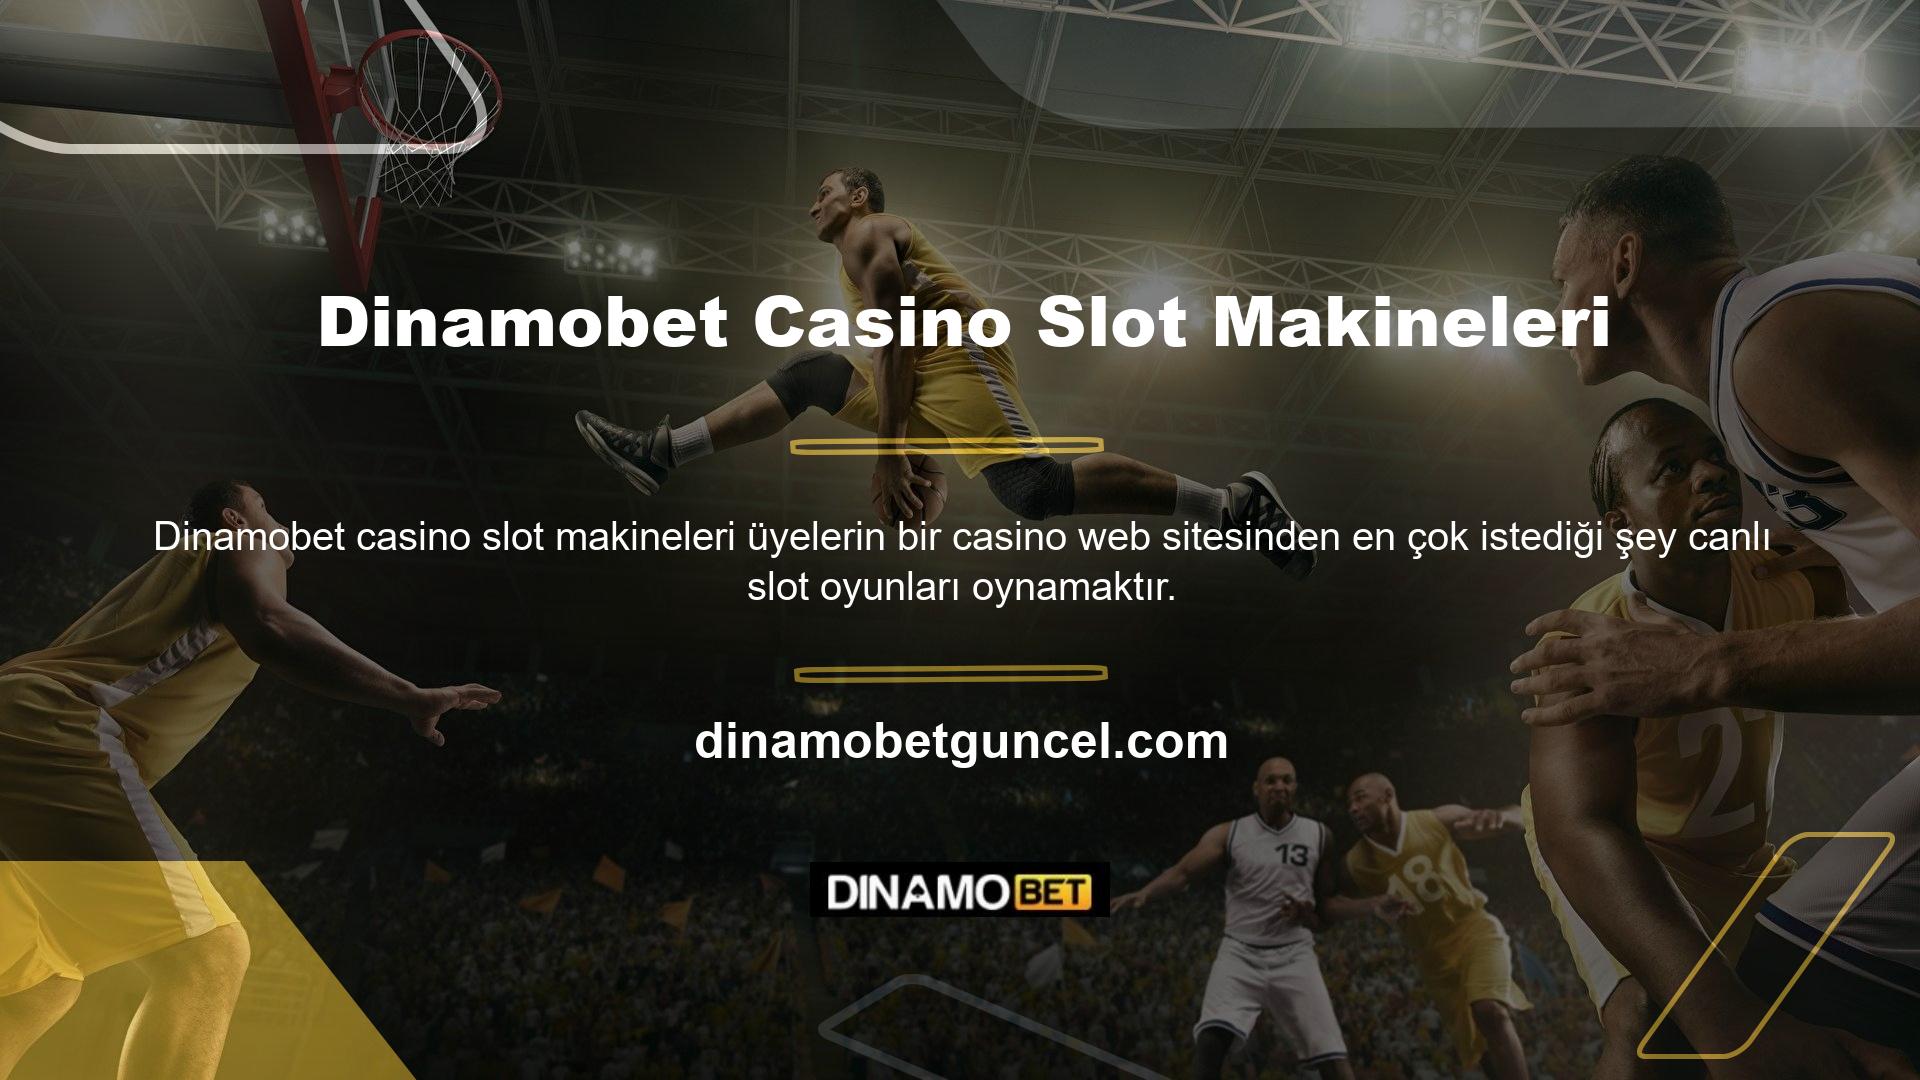 Casino slot web sitelerinde oynanan oyunlar arasında poker, bakara, rulet ve blackjack gibi tüm ünlü slot oyunları bulunur